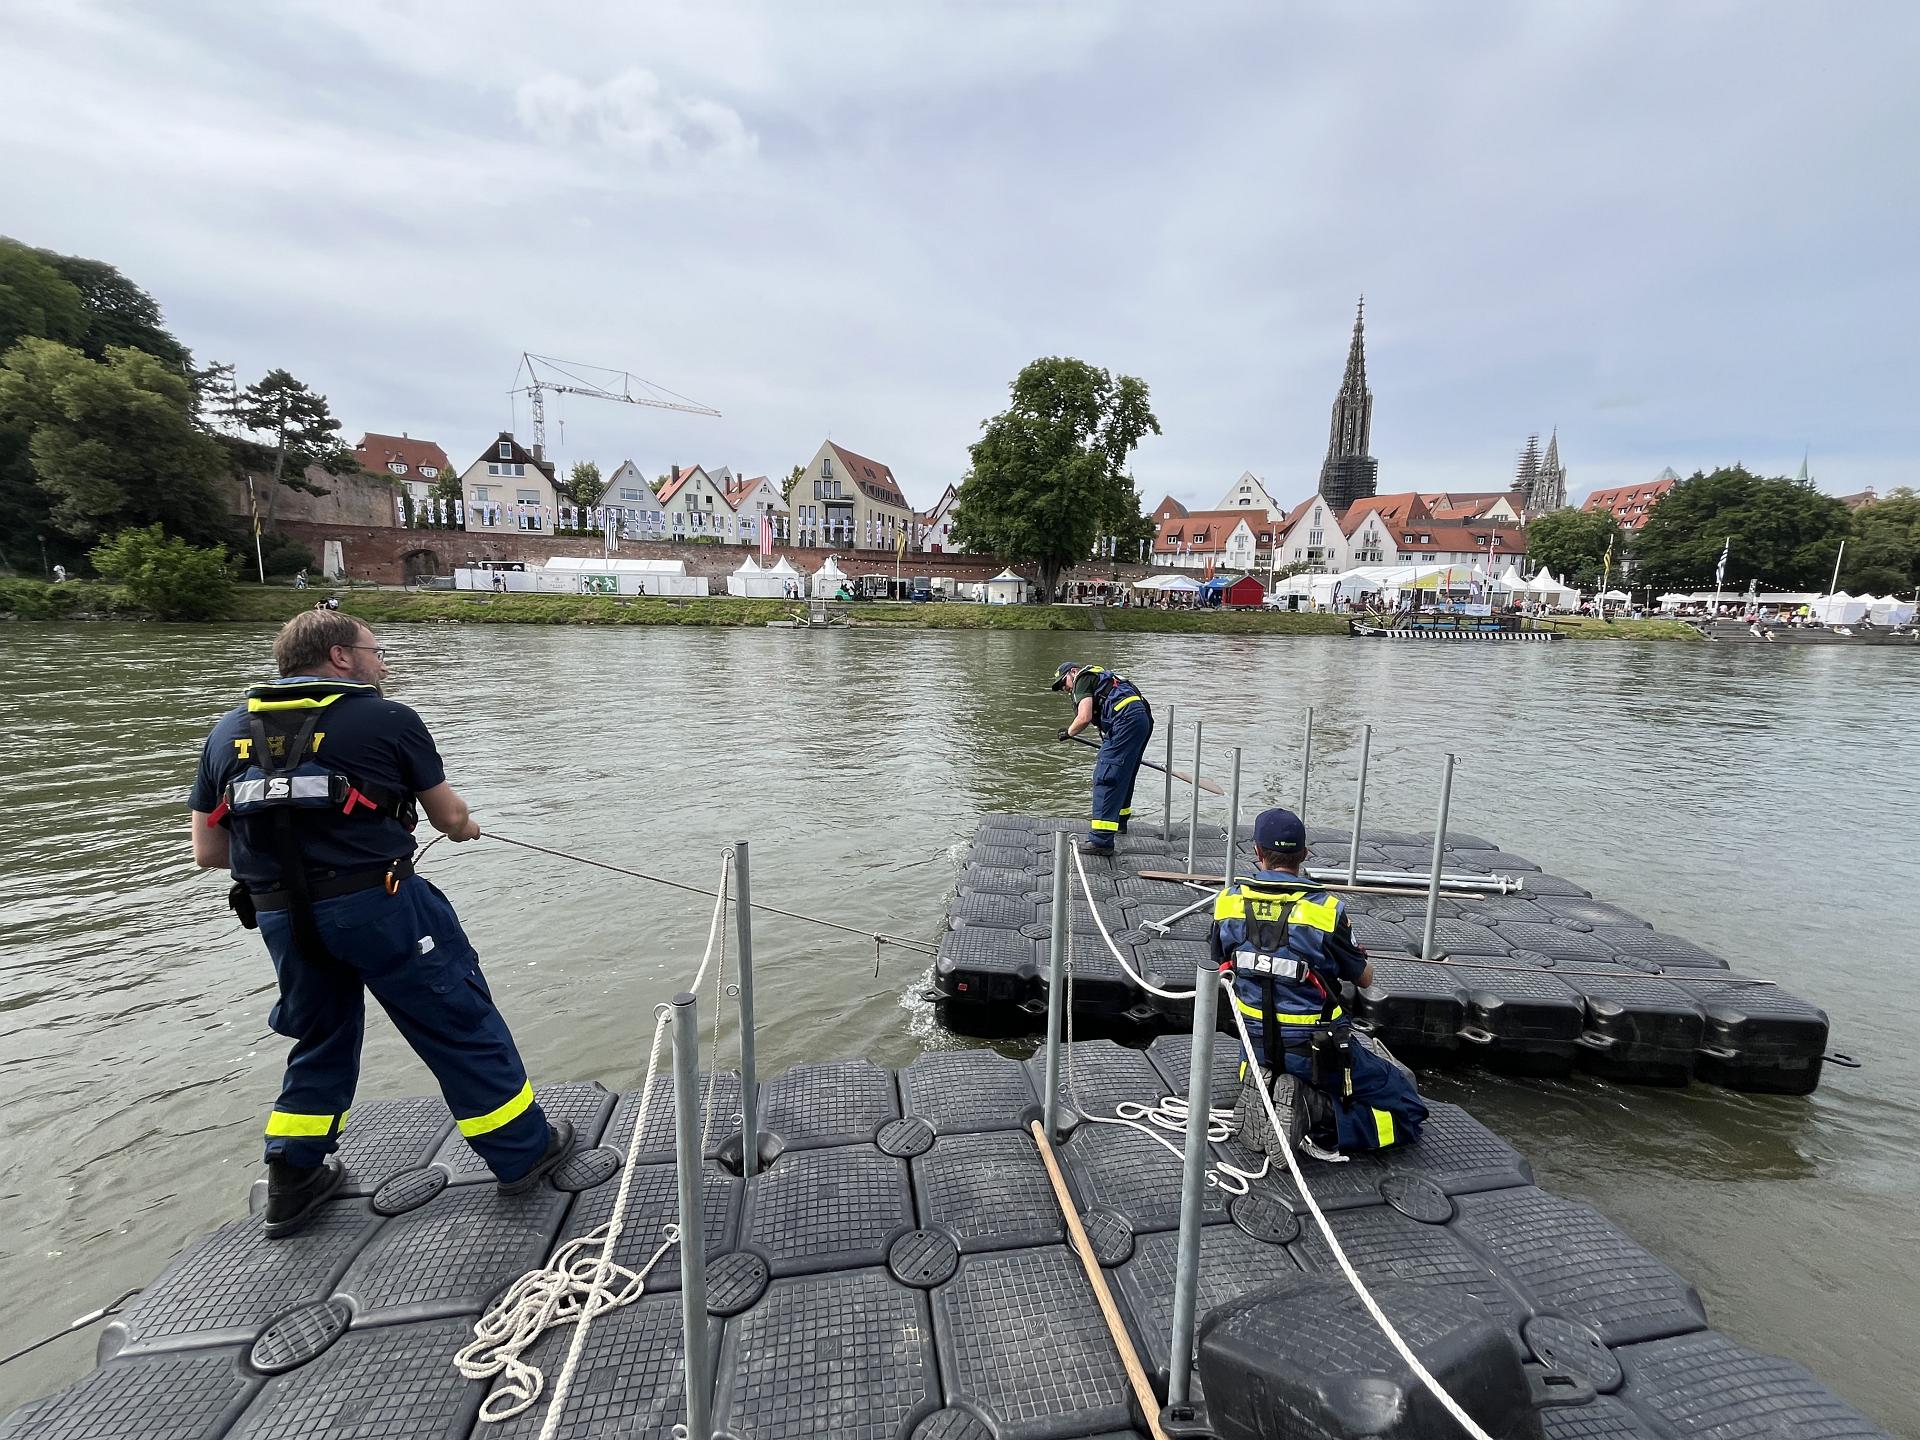 Fachgruppe Wassergefahren beseitigt Hochwasserschäden an der Donau